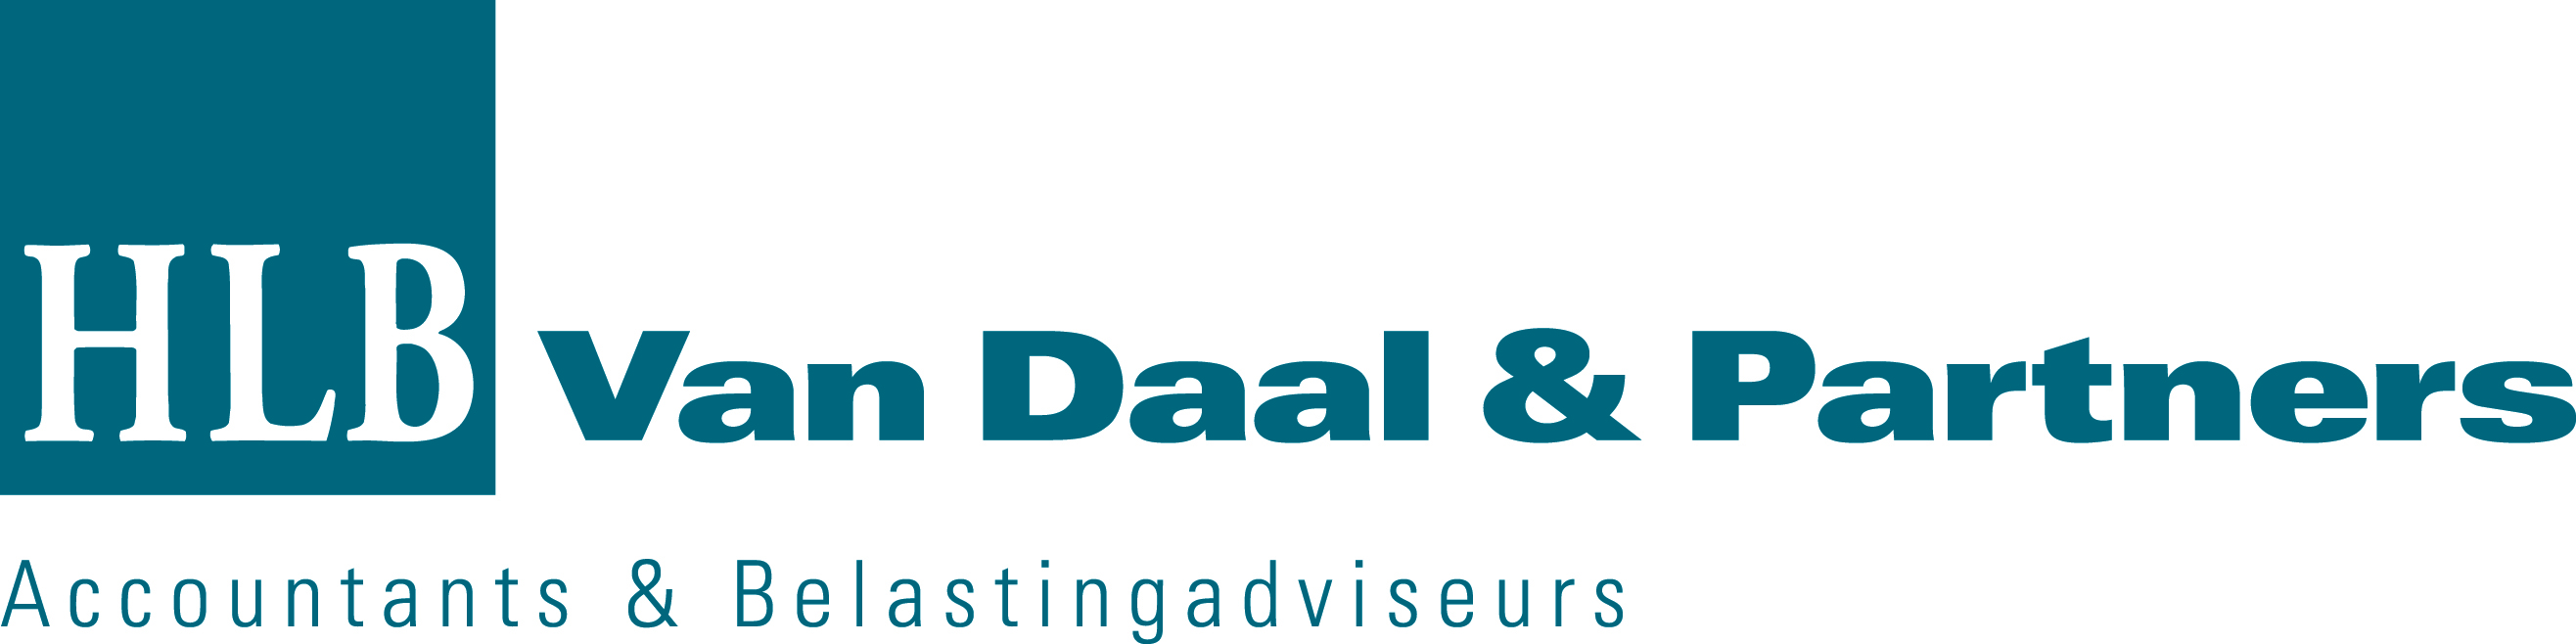 HLB Van Daal & Partners